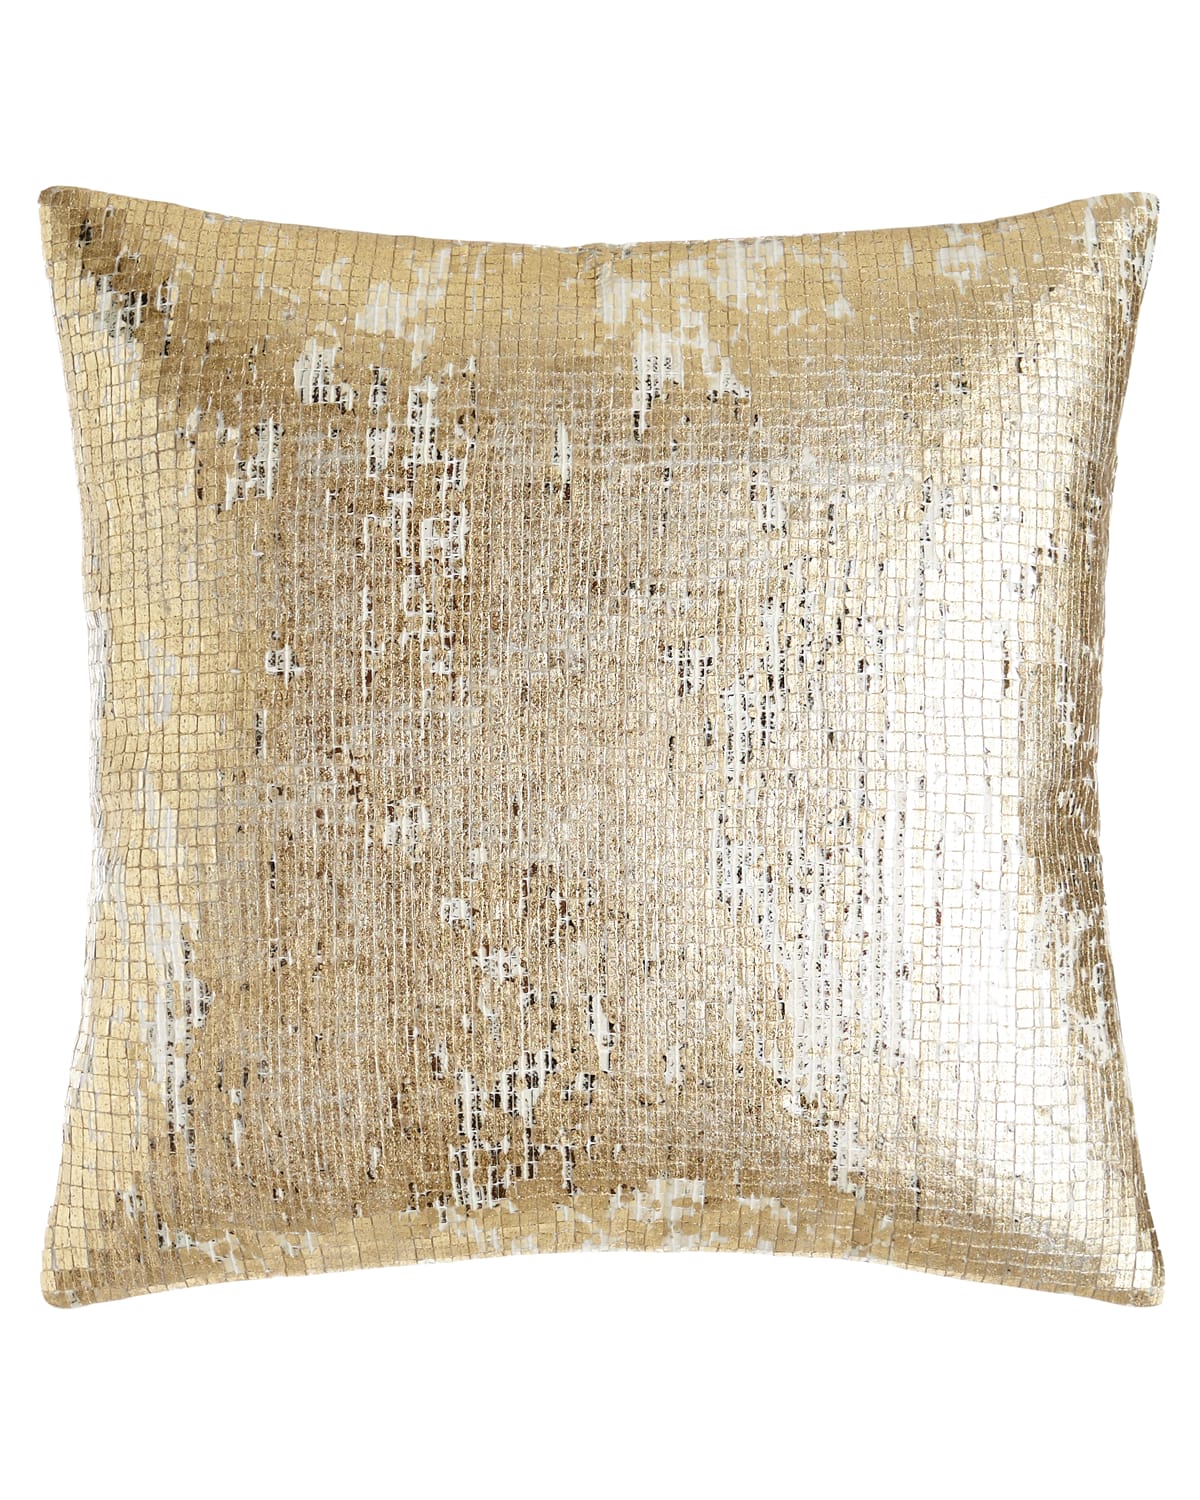 Image Donna Karan Home Rhythm Sequin Pillow, 16"Sq.